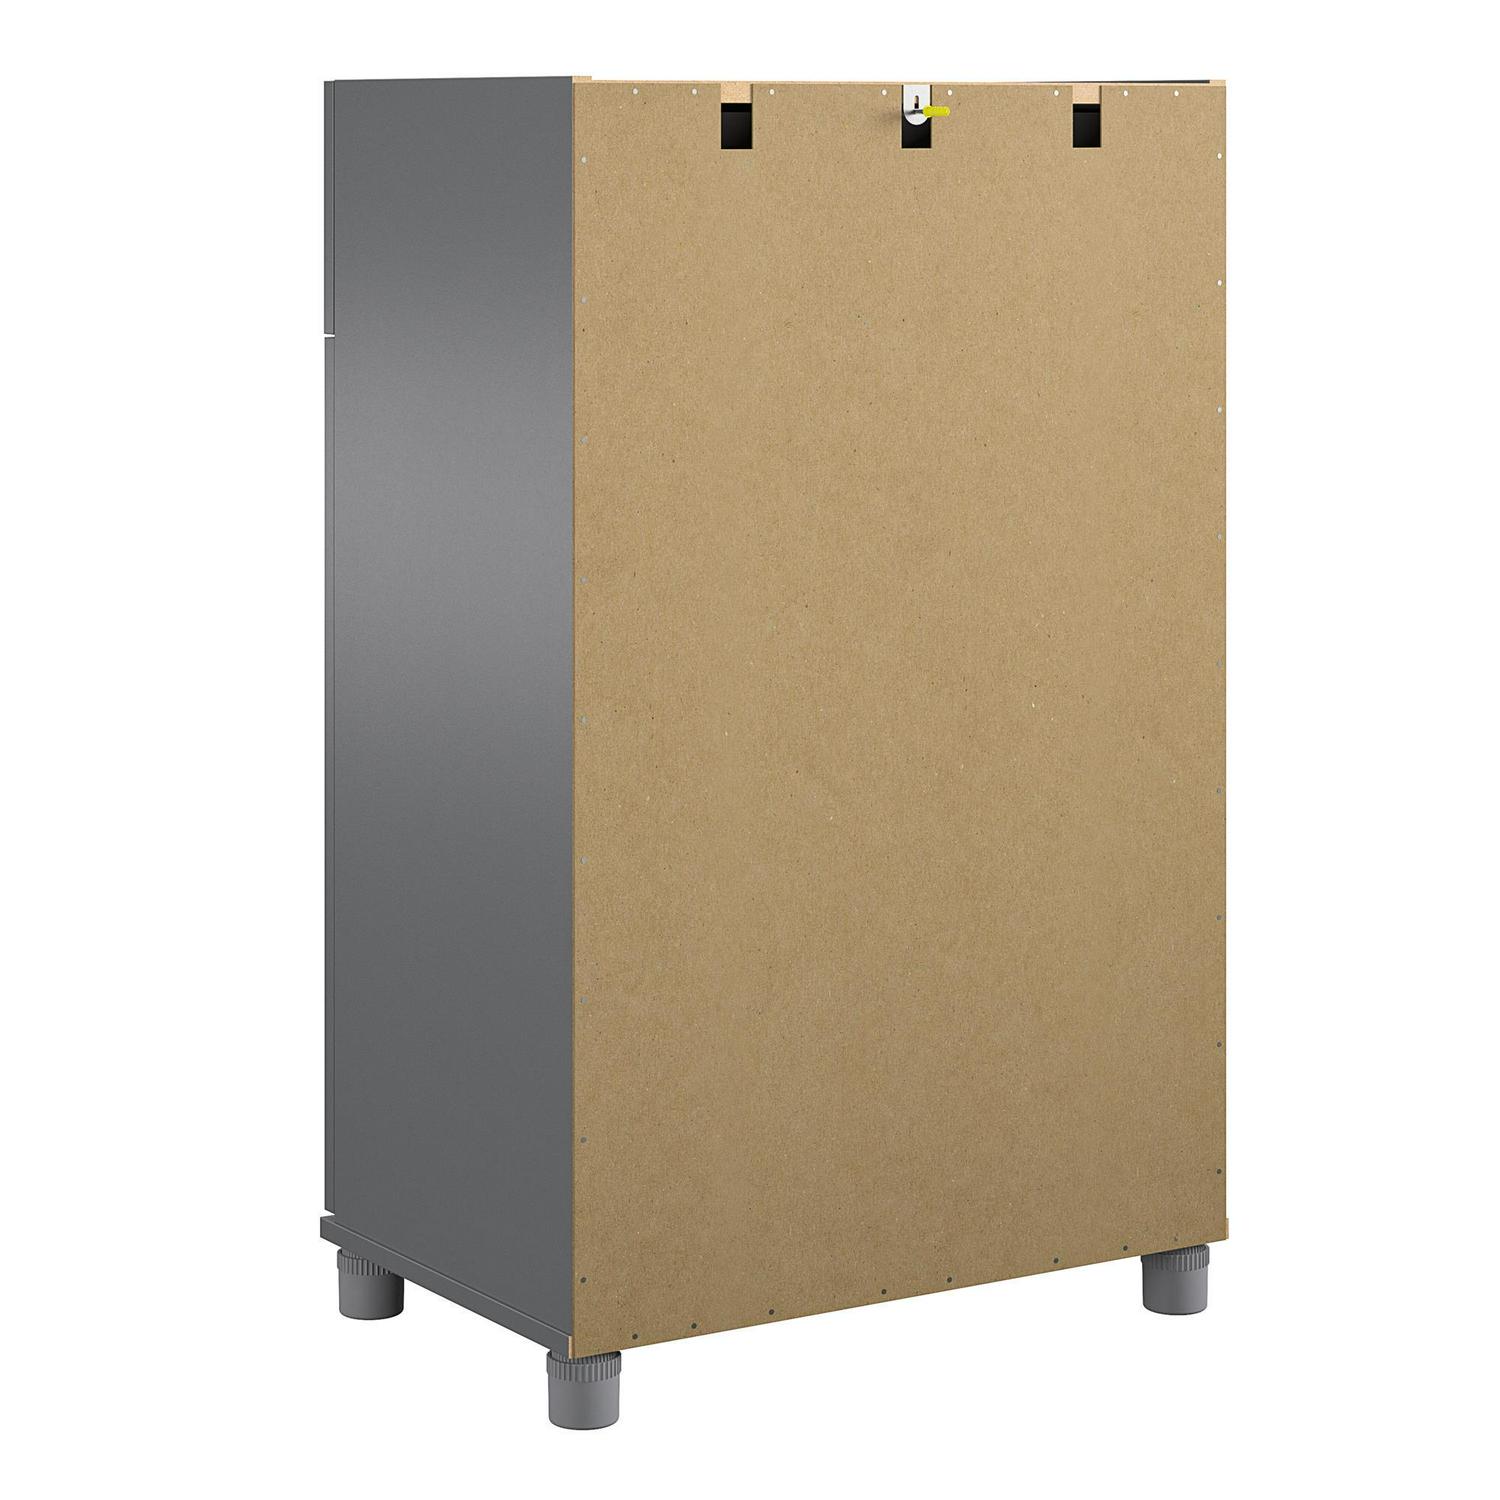 Systembuild Evolution Westford 2 Door/1 Drawer Garage Storage Cabinet， Graphite Gray